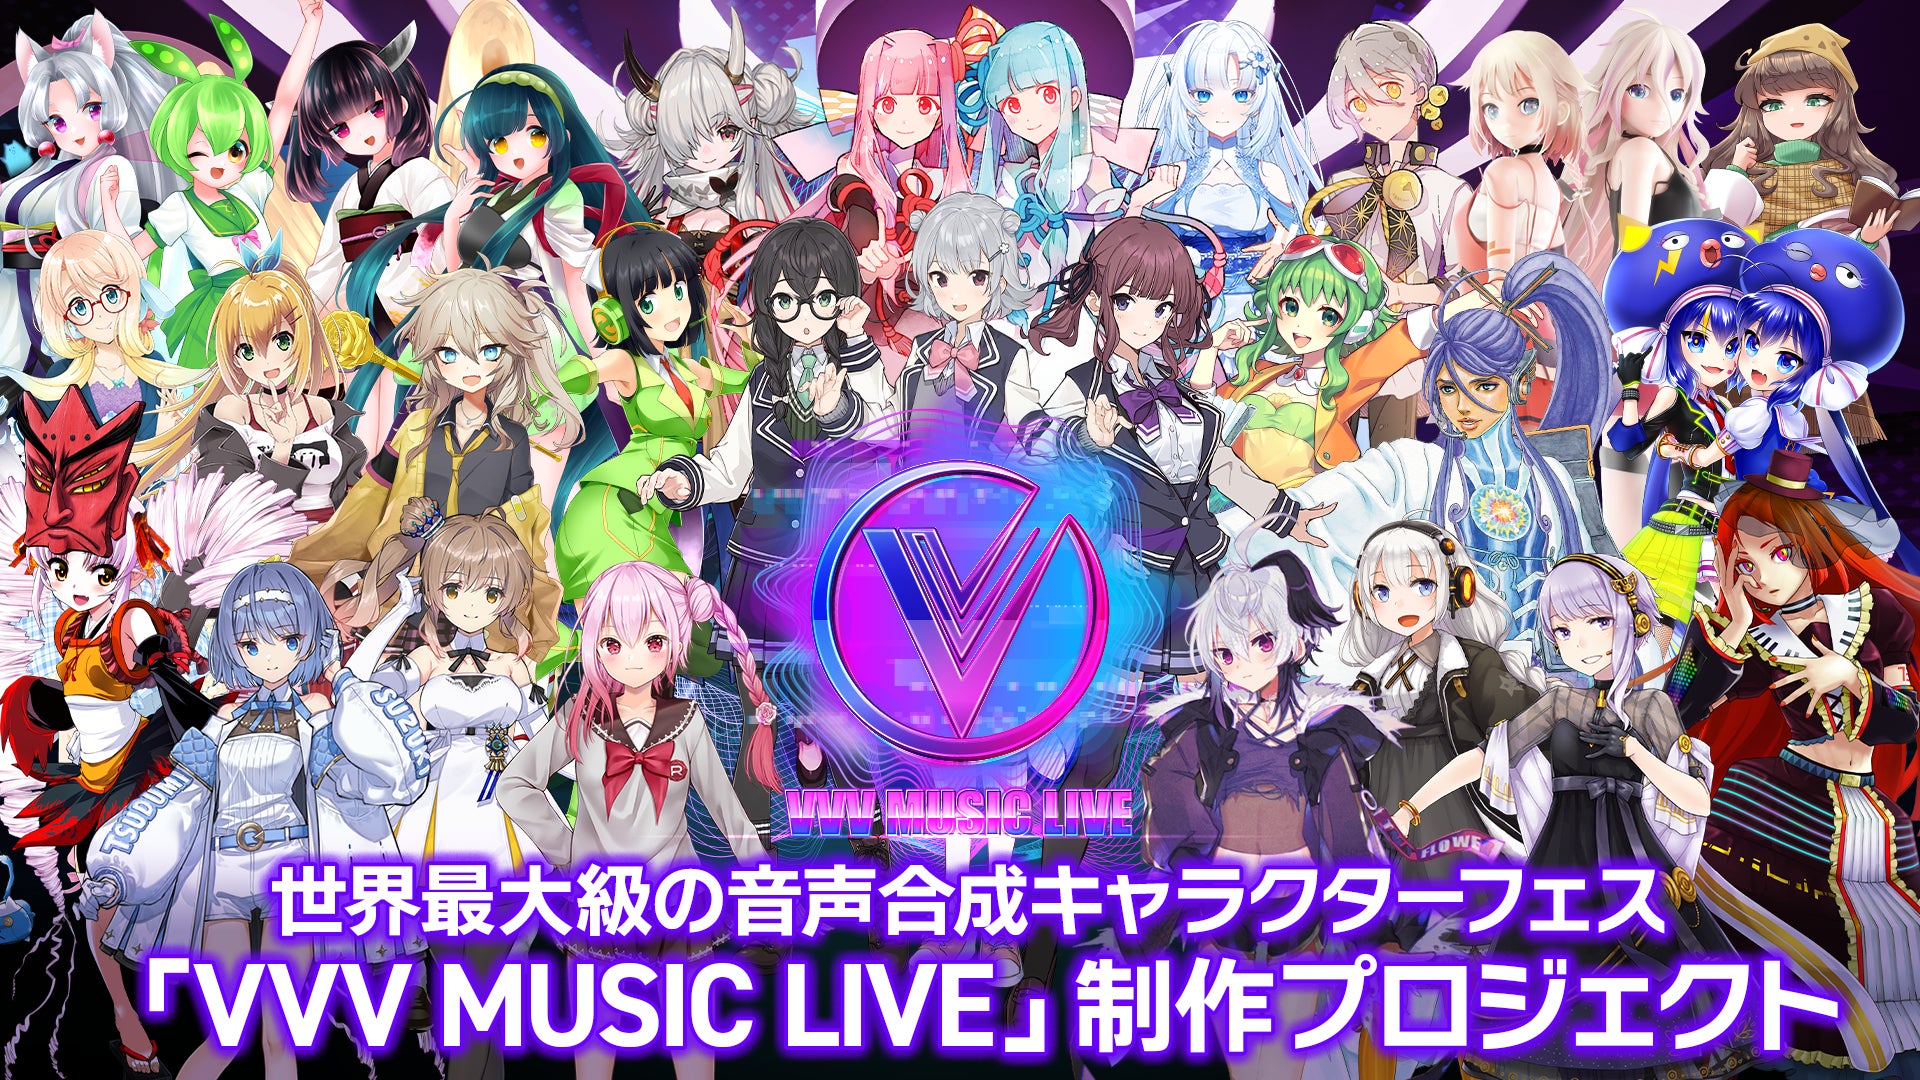 世界最大級の音声合成キャラクターフェス 『 VVV MUSIC LIVE 』制作プロジェクトをクラウドファンディングで開始